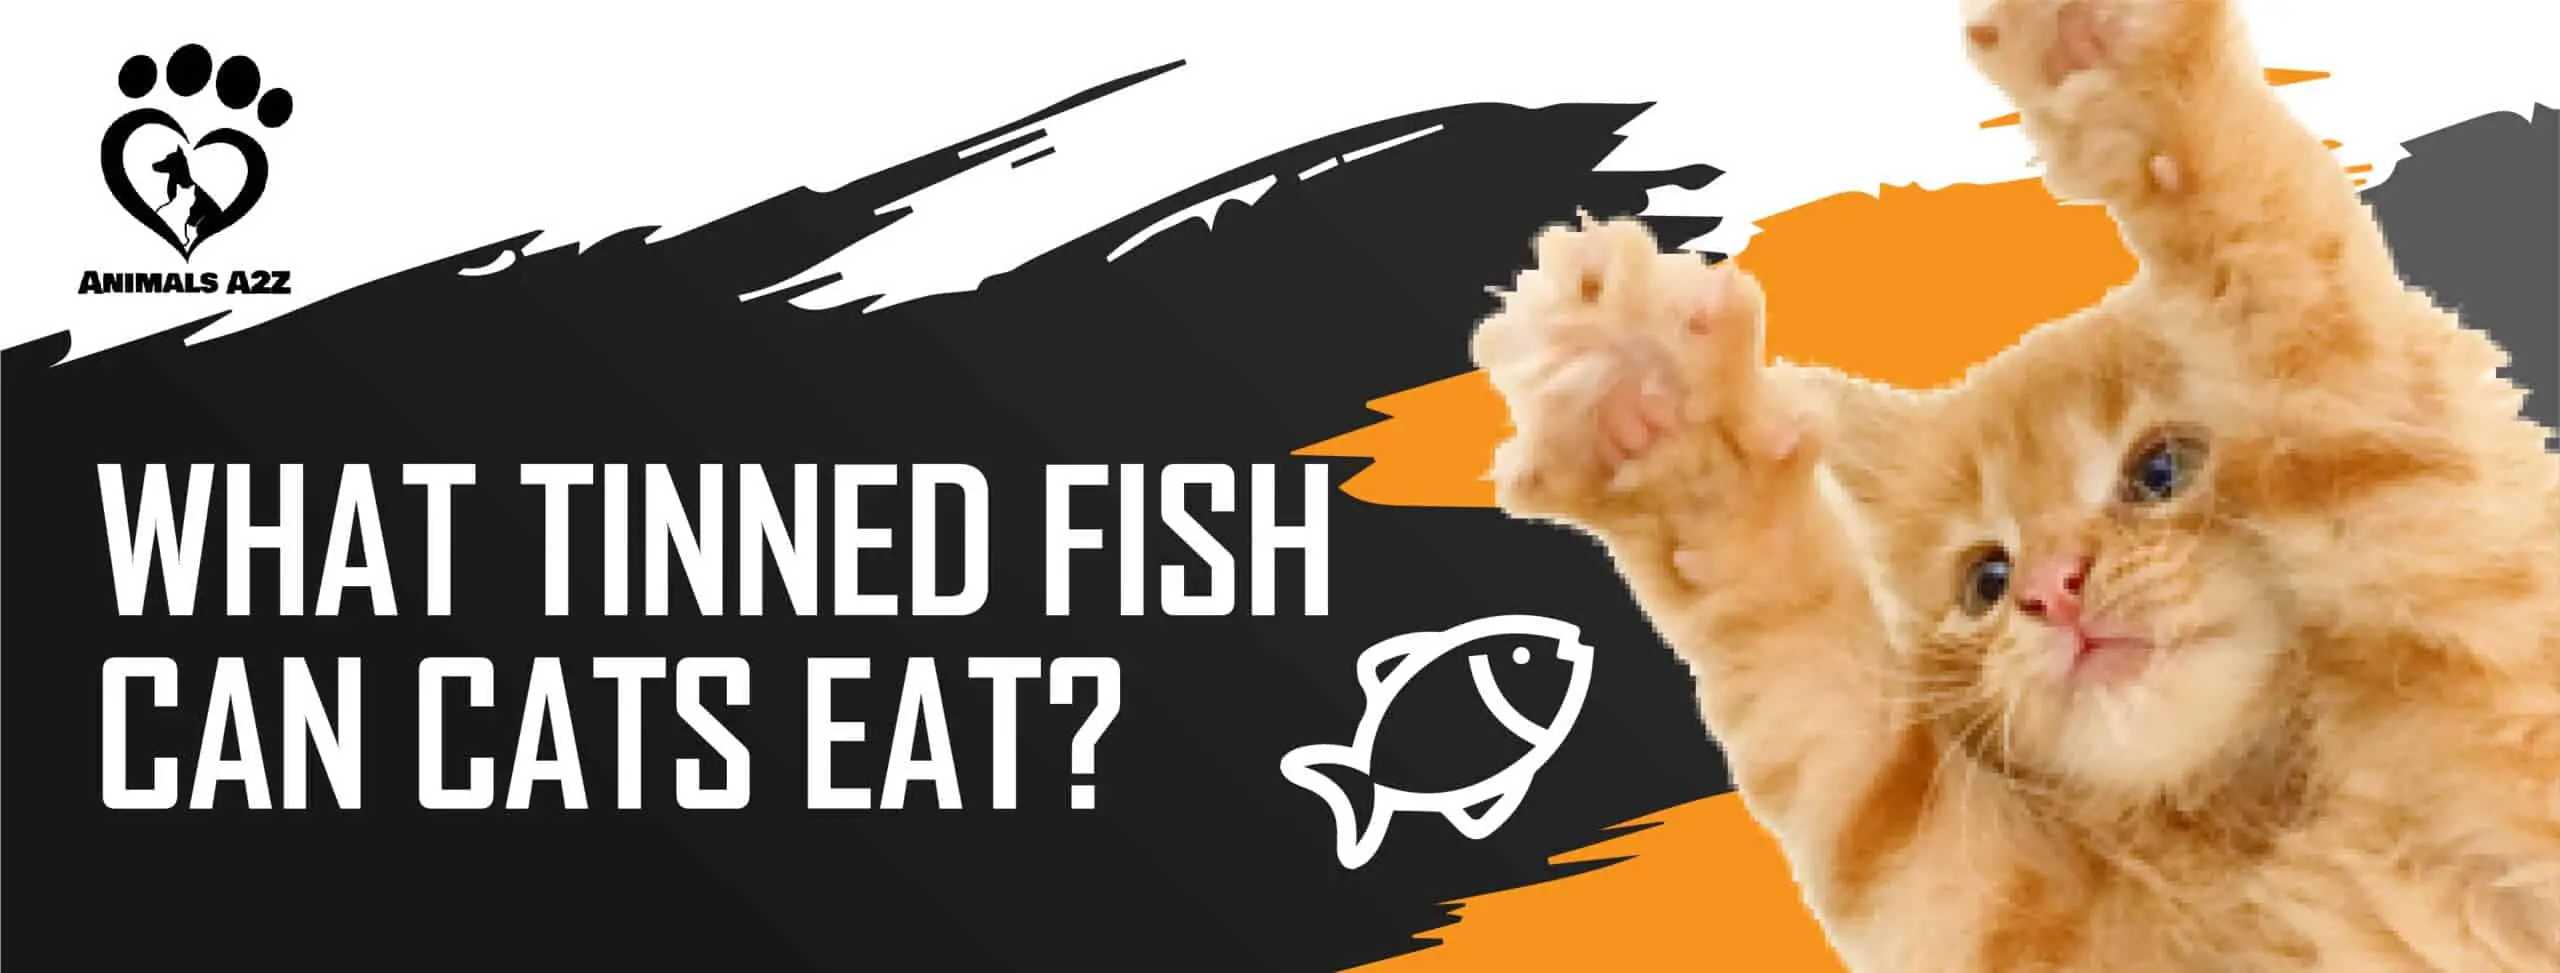 Hvilke fiskekonserves kan katte spise